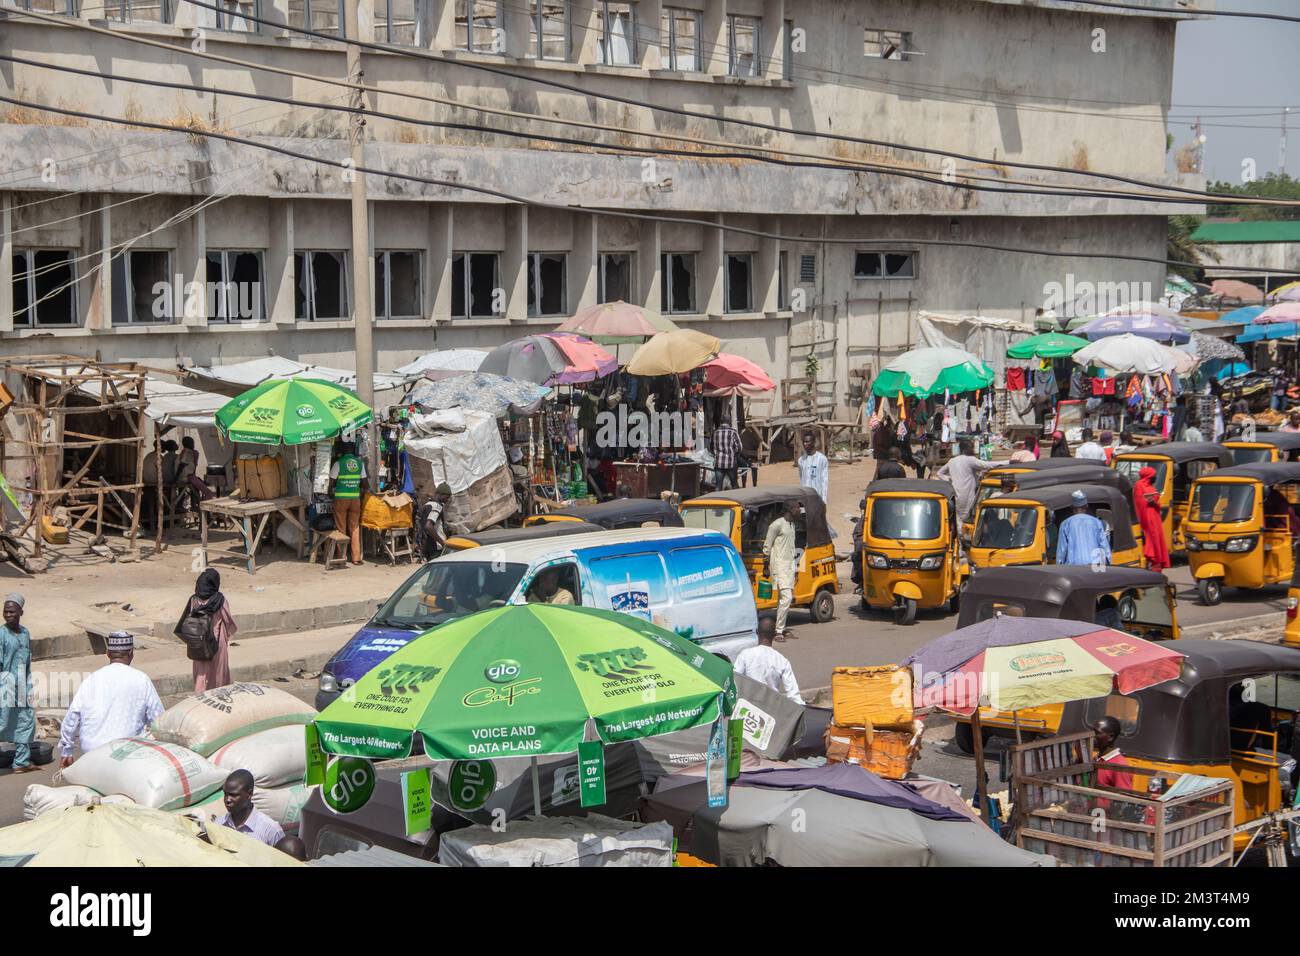 Affollato mercato aperto nelle strade africane con traffico intenso con taxi tuk-tuk e un gruppo di persone affollate che controllano i venditori ambulanti, scenario tipico dell'Africa Foto Stock